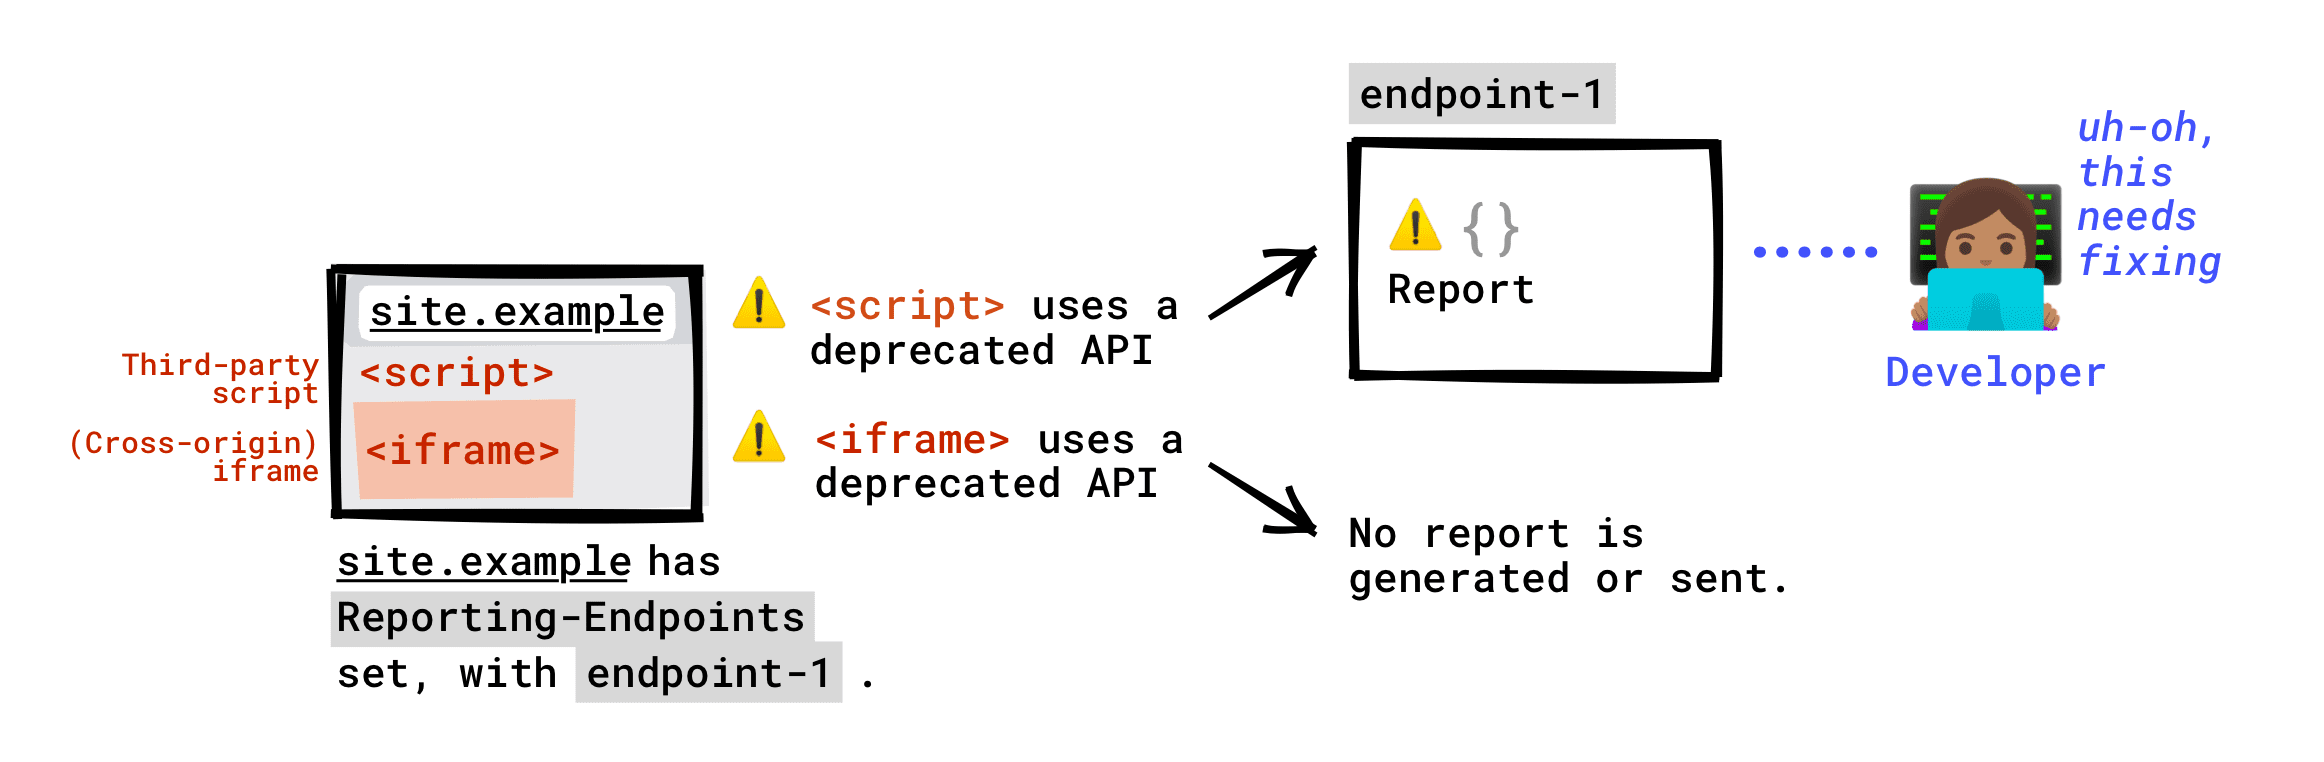 Sayfanızda Reporting-Endpoints başlığı ayarlandıysa: Sayfanızda çalışan üçüncü taraf komut dosyaları tarafından çağrılan kullanımdan kaldırılmış API, uç noktanıza bildirilir. Sayfanıza yerleştirilmiş bir iframe tarafından çağrılan, kullanımdan kaldırılmış API&#39;ler uç noktanıza bildirilmez. Bir kullanımdan kaldırma raporu yalnızca iframe sunucusu Raporlama Uç Noktaları&#39;nı ayarlamışsa oluşturulur ve bu rapor iframe&#39;in sunucusunun ayarladığı uç noktaya gönderilir.